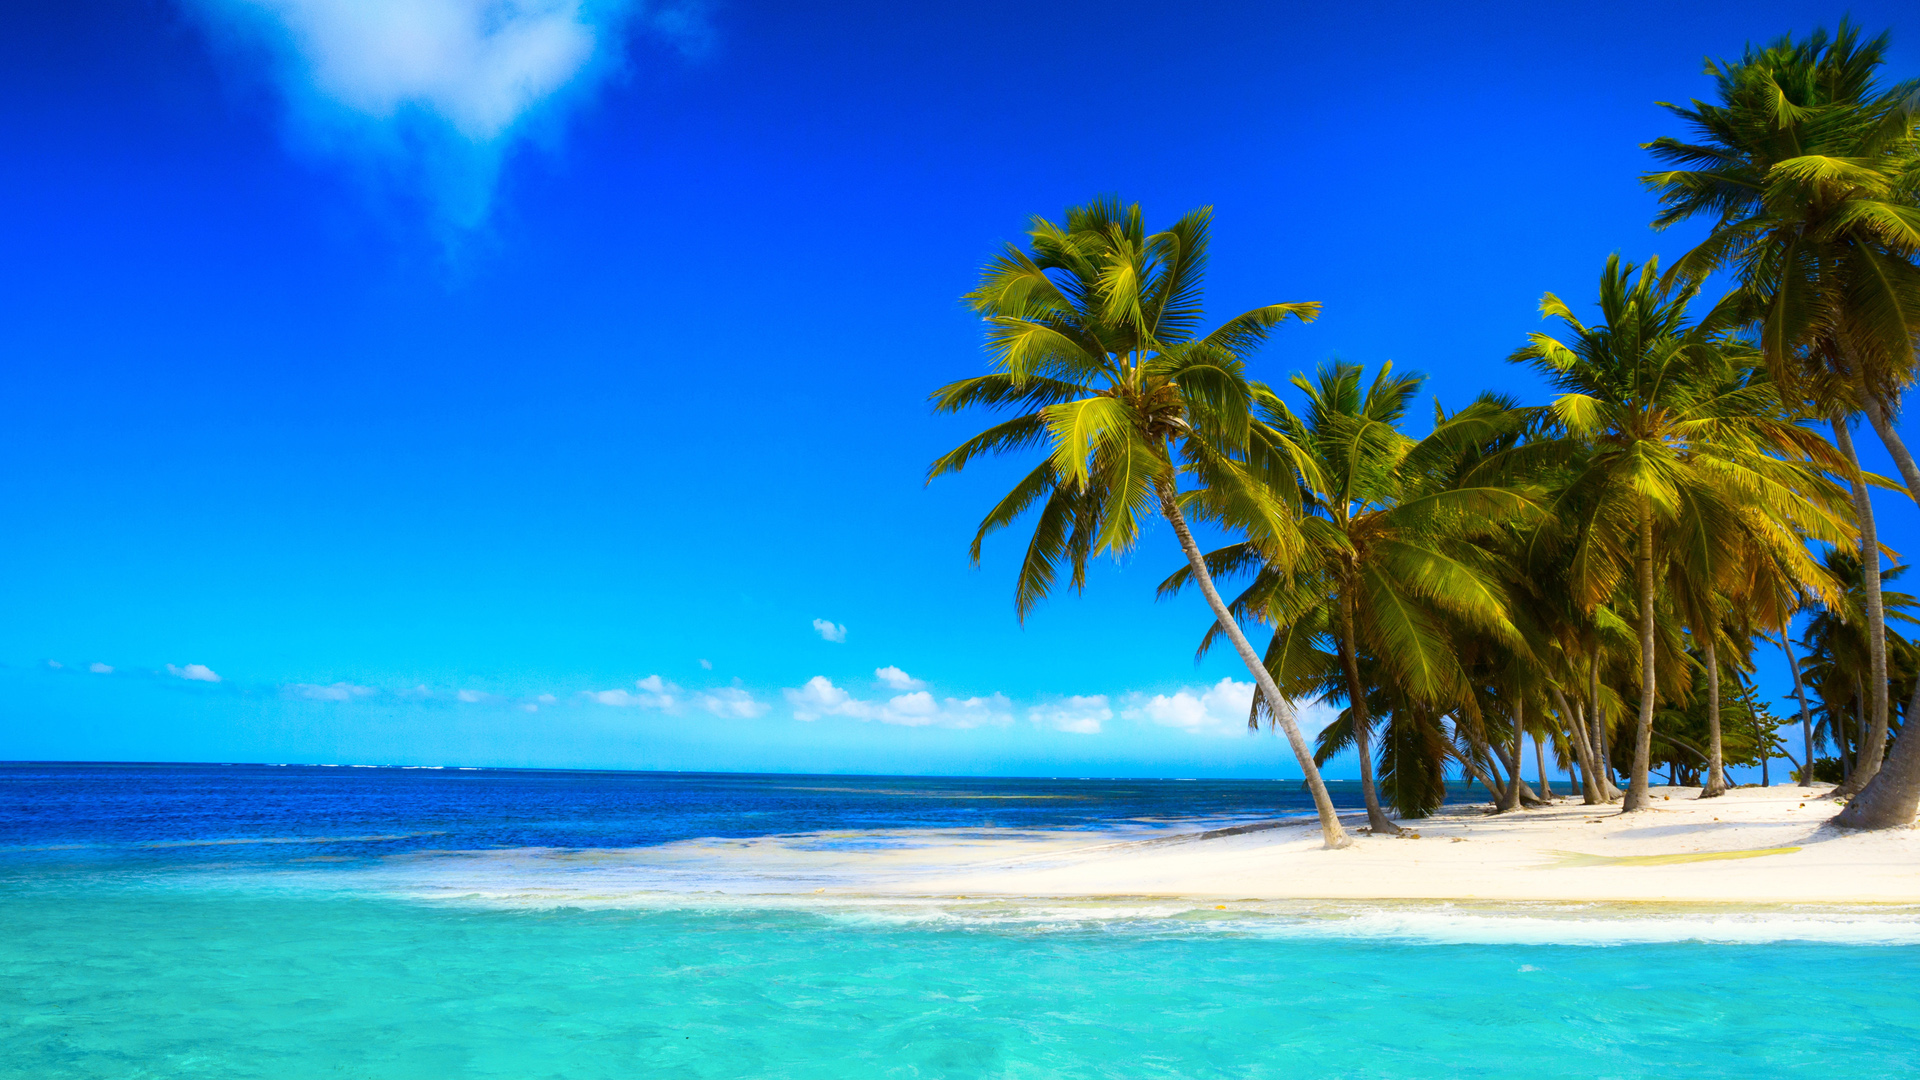 热带，天堂，沙滩，海岸，蓝色海洋，翡翠，棕榈，天空，云，美丽的风景桌面壁纸